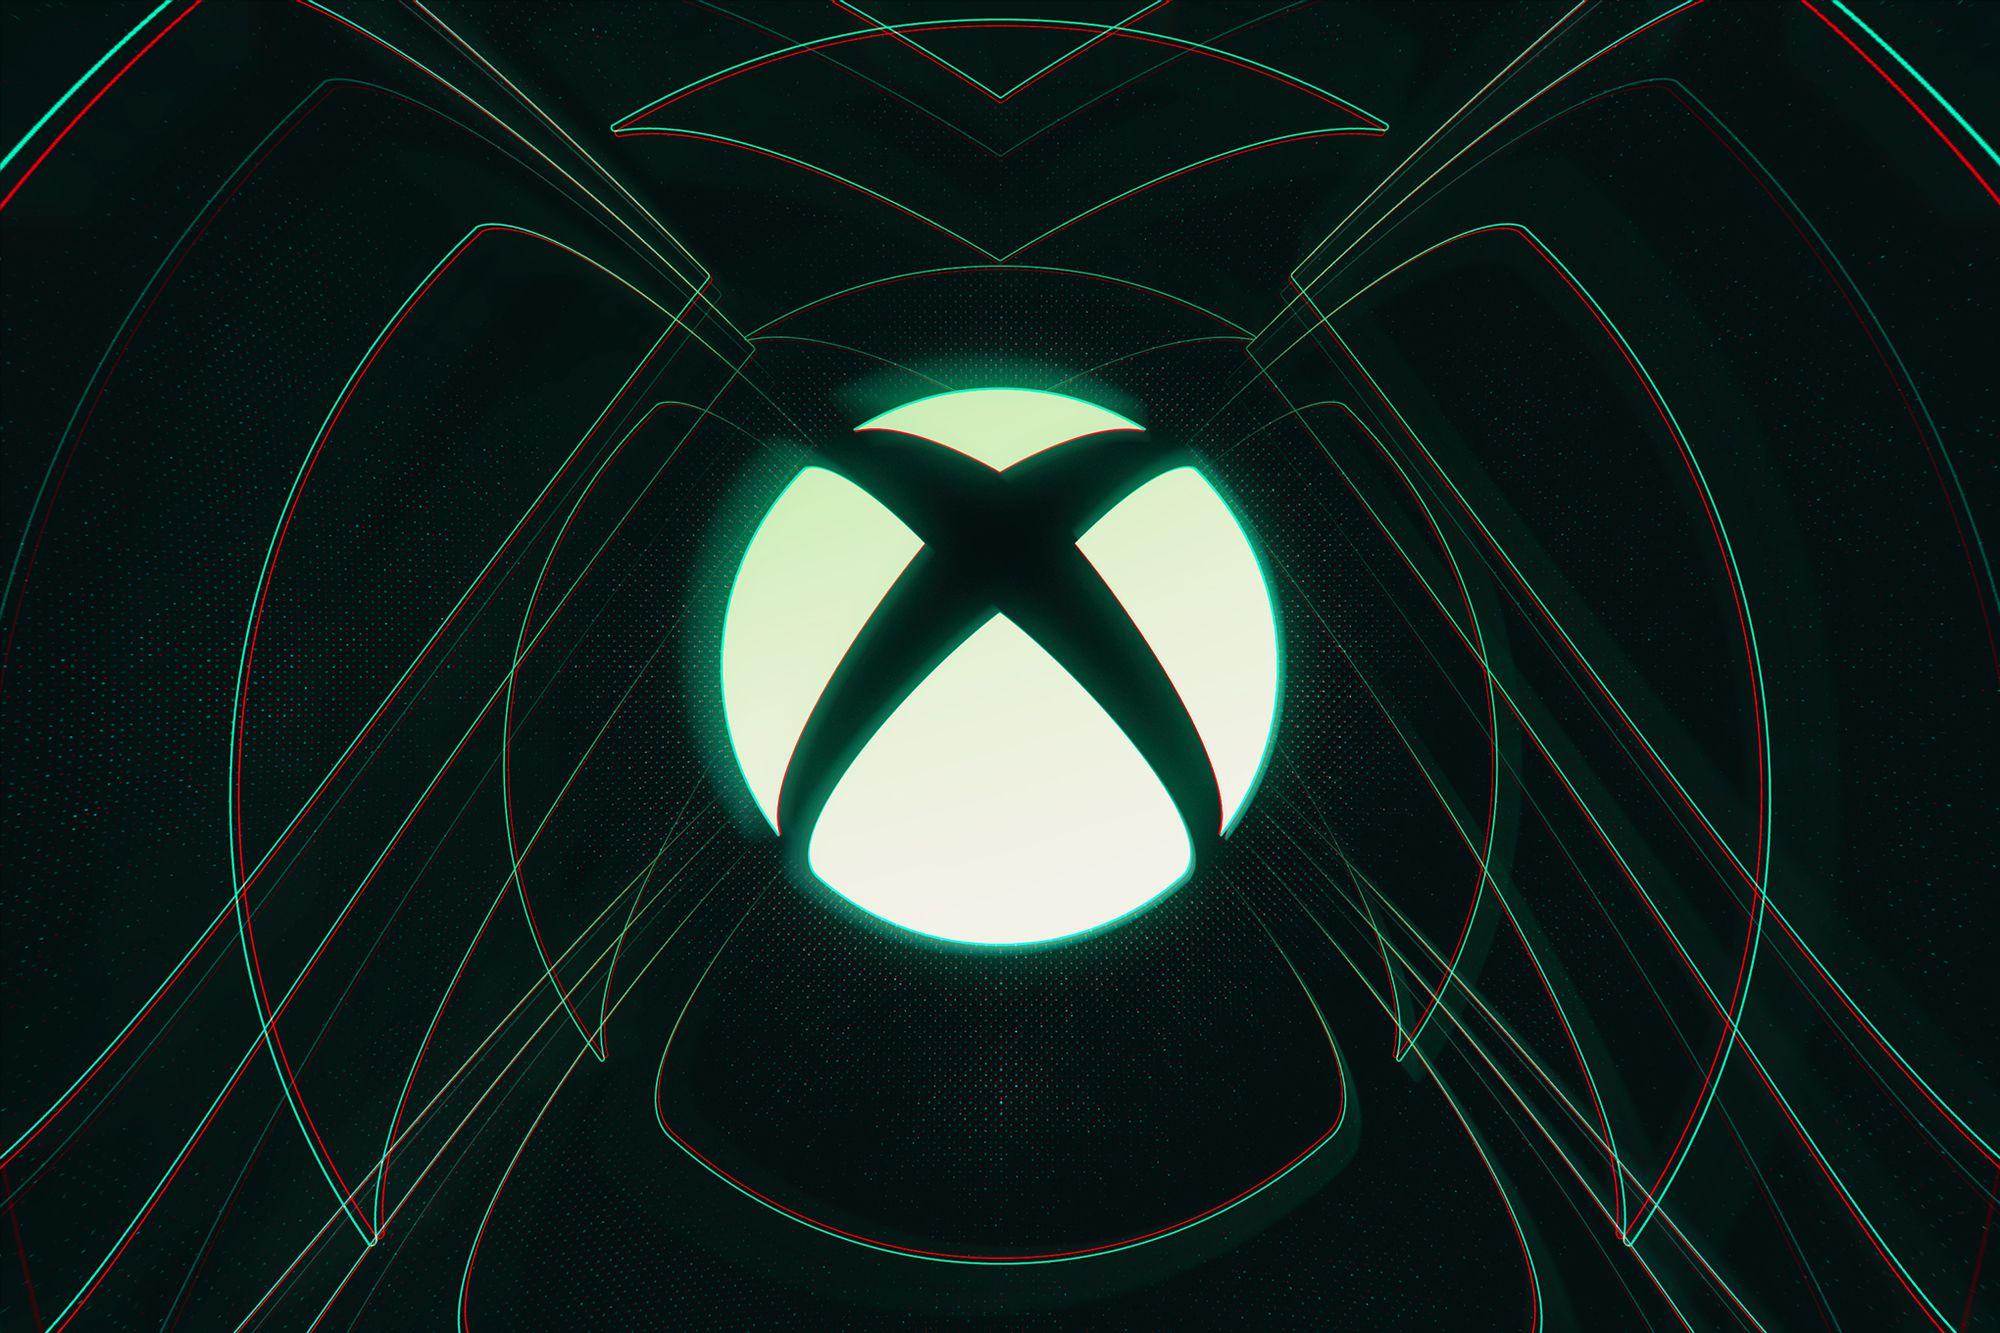 Gros plan du logo Xbox sur fond noir avec des lignes vertes.